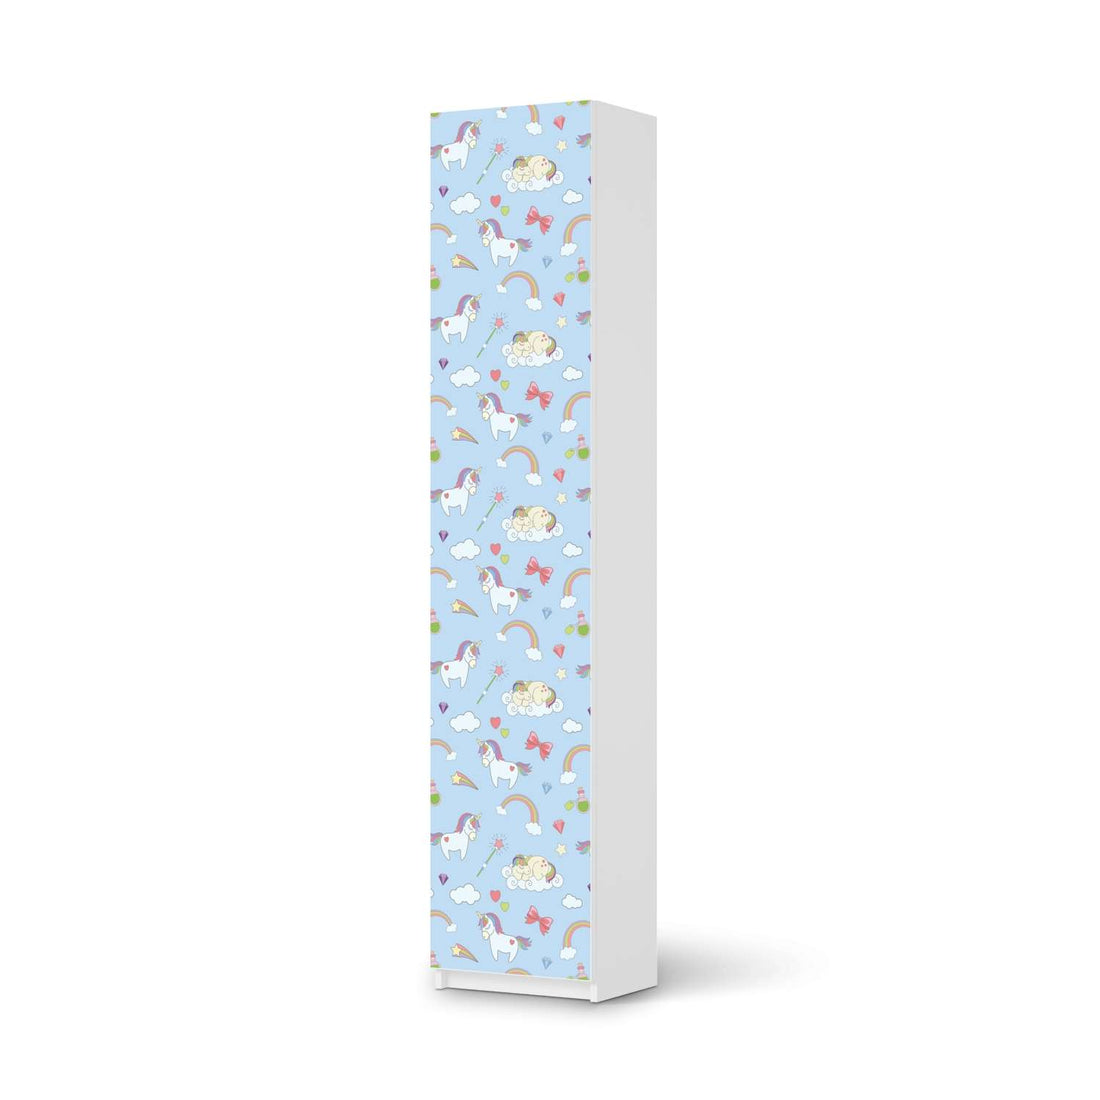 Klebefolie Rainbow Unicorn - IKEA Pax Schrank 236 cm Höhe - 1 Tür - weiss